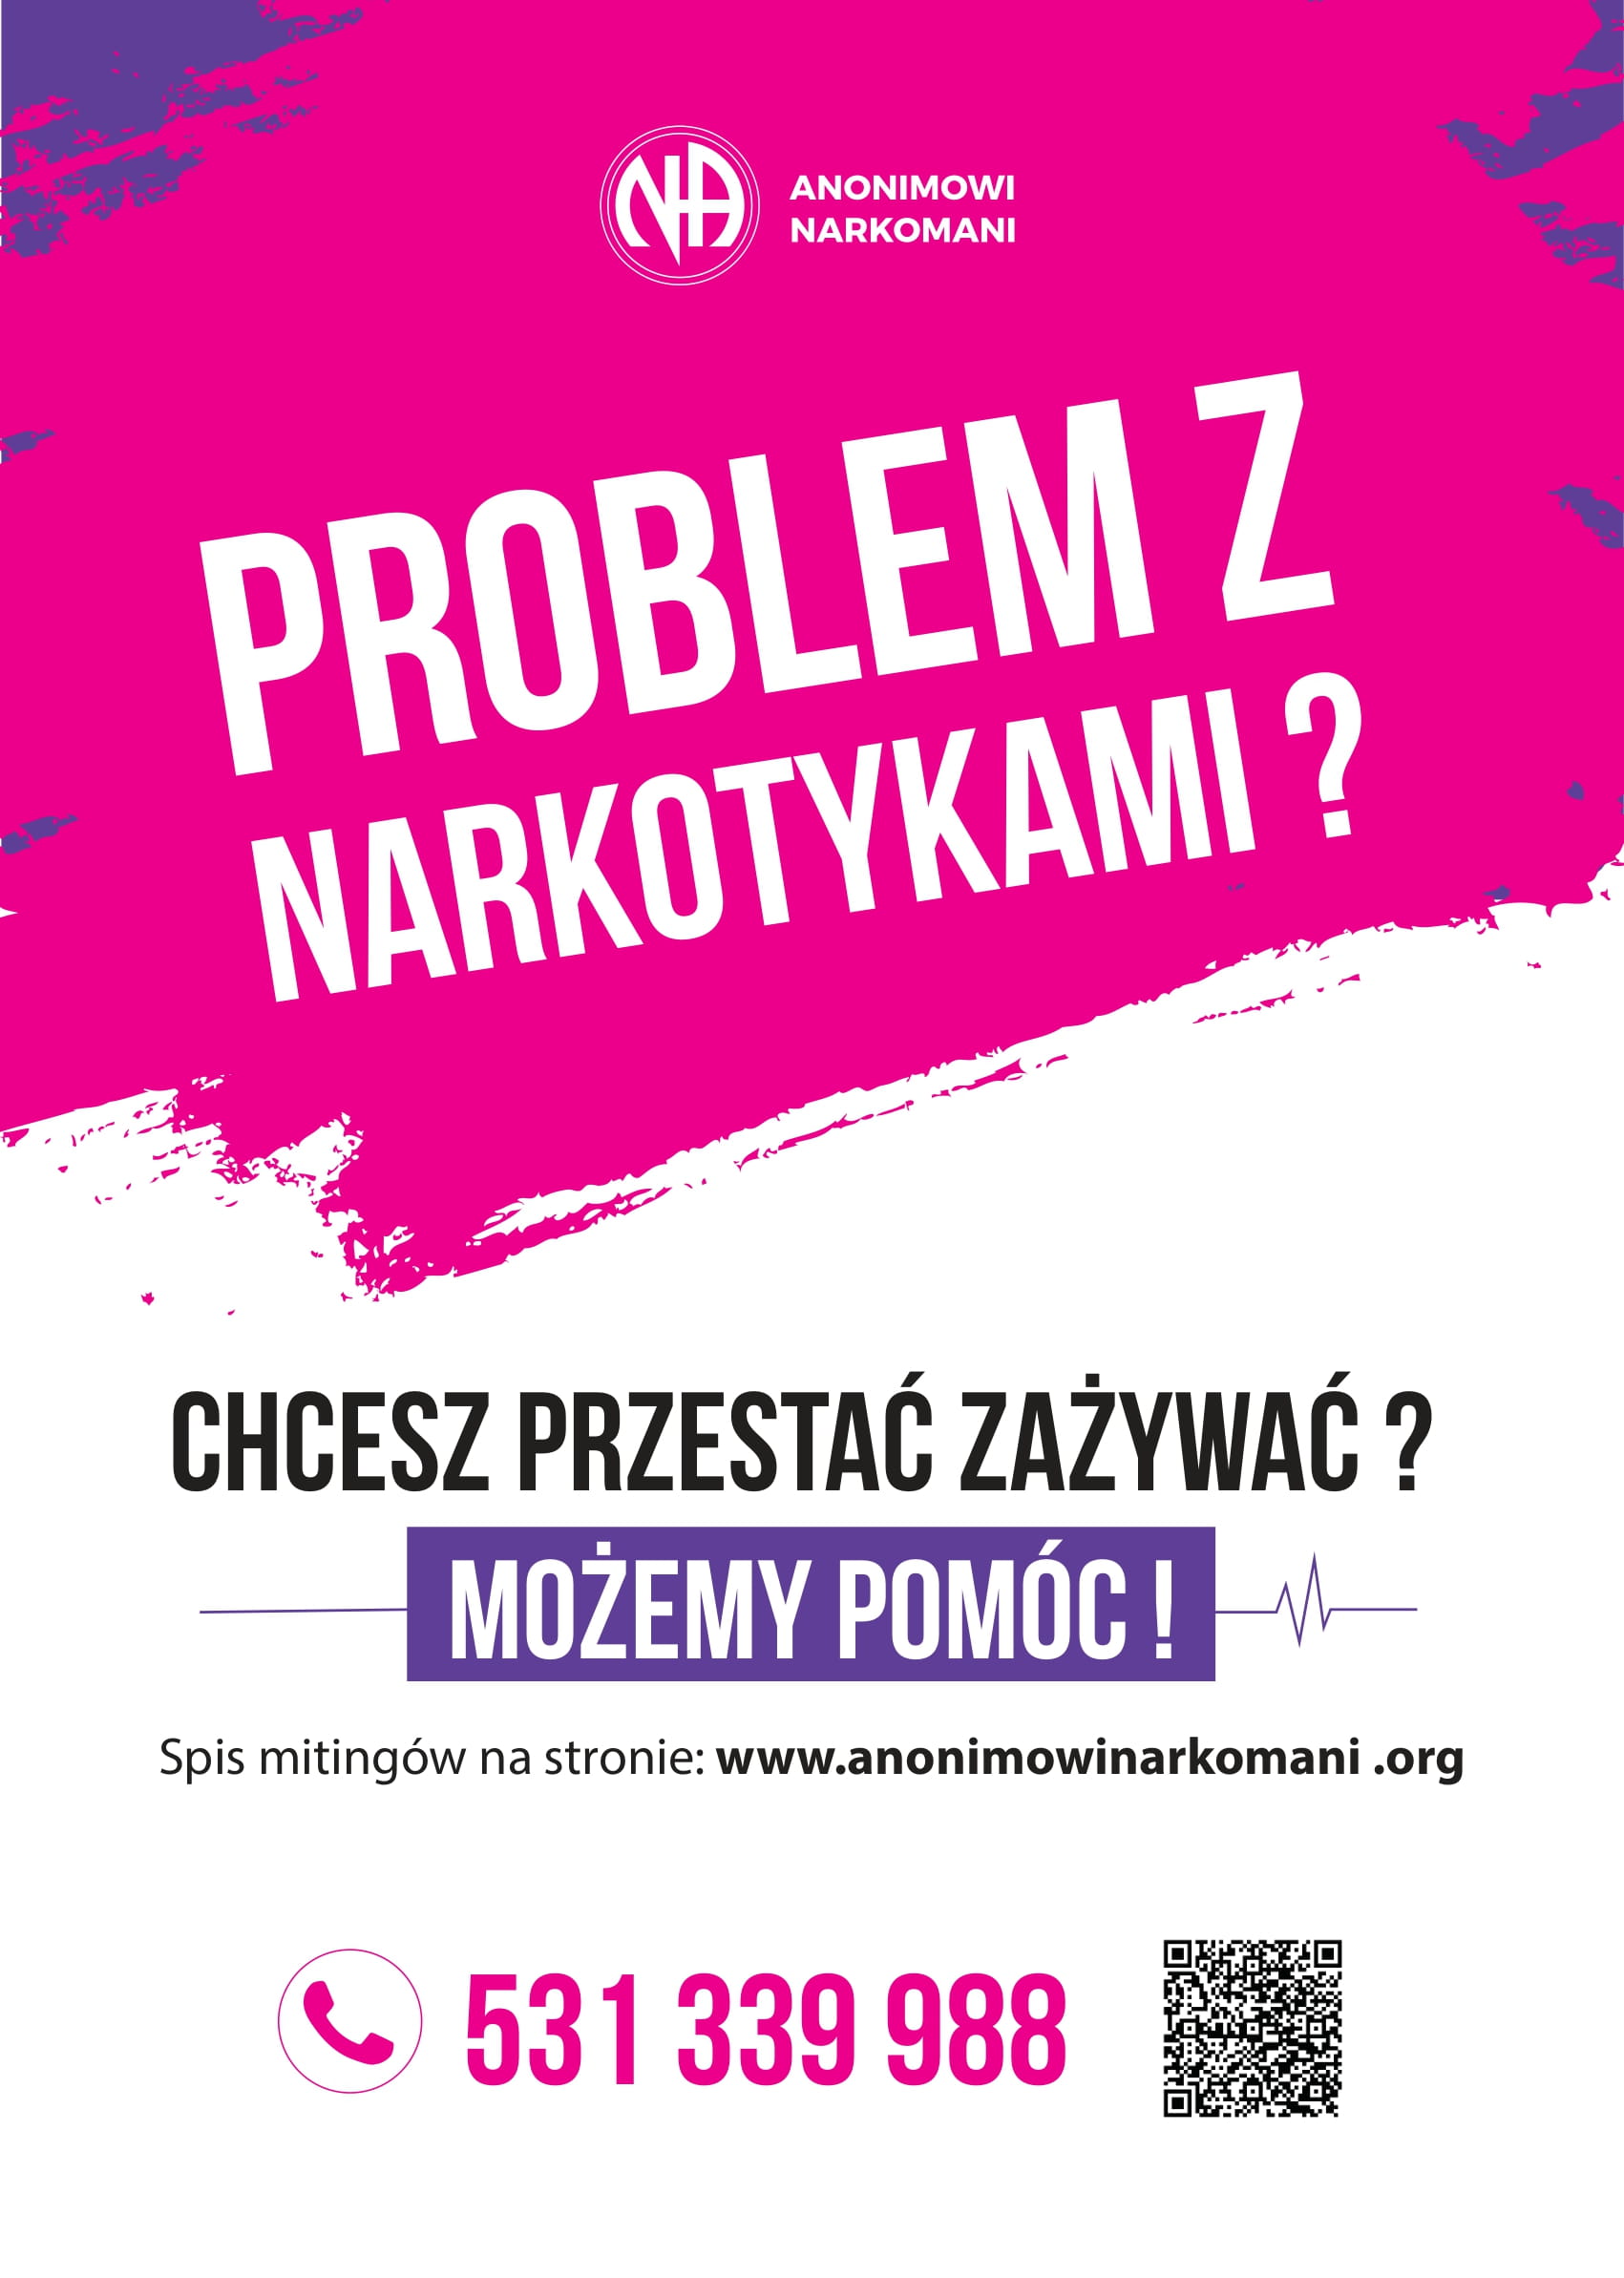 Plakat promujący działalność grupy Anonimowi Narkomani.